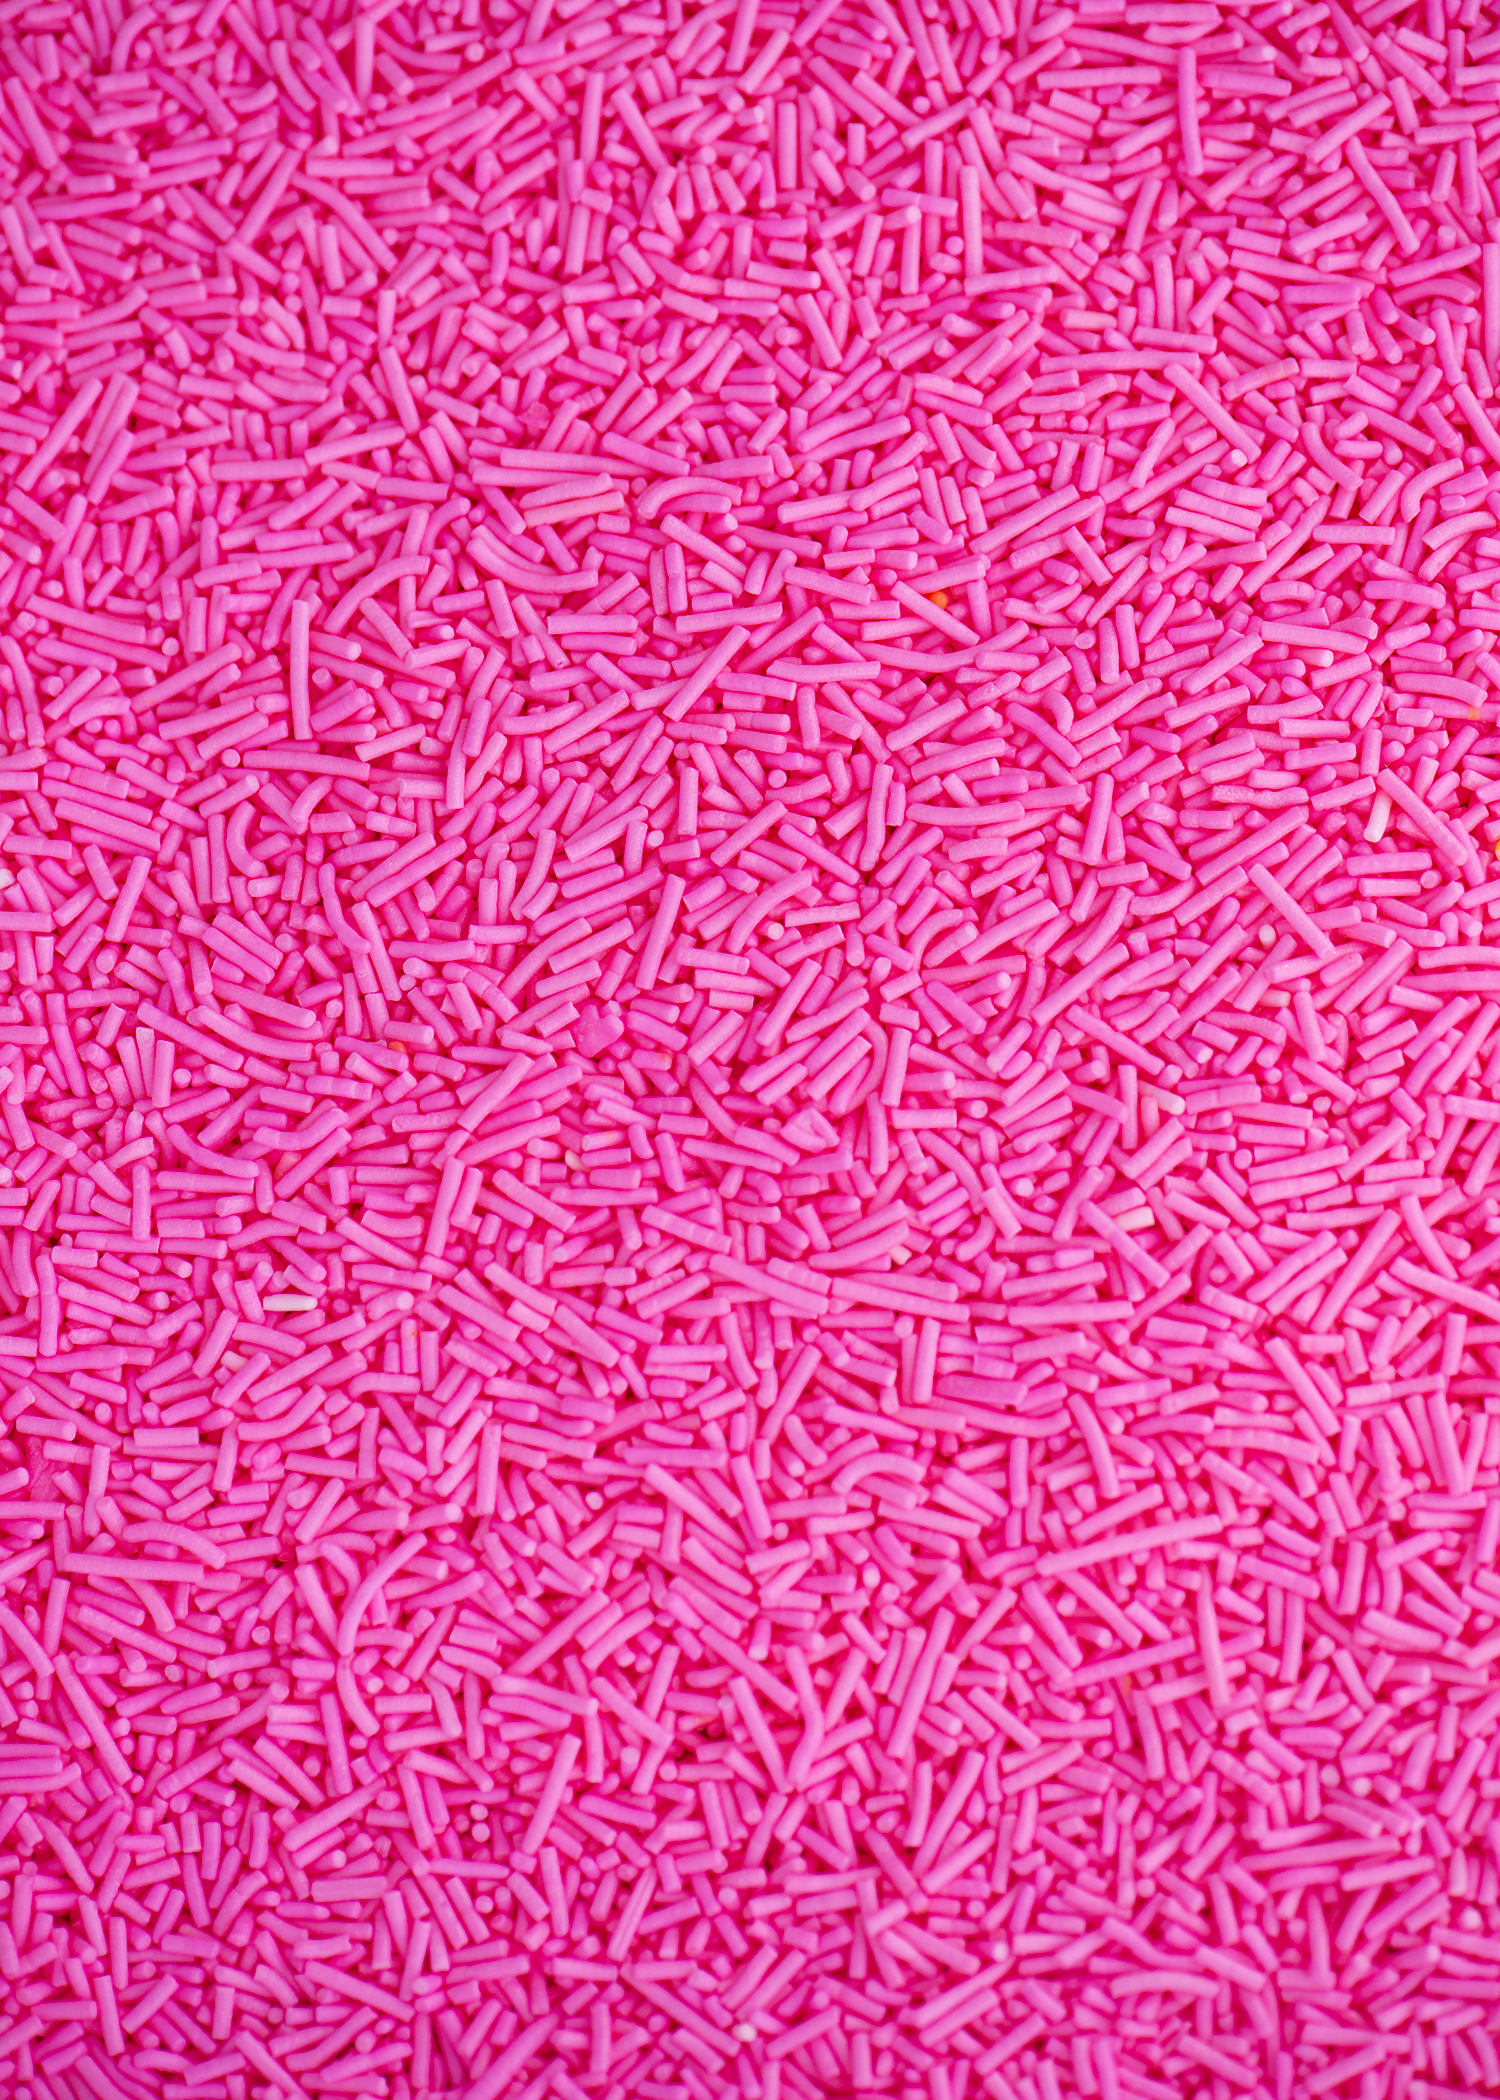 Bright Pink Crunchy Sprinkles - US